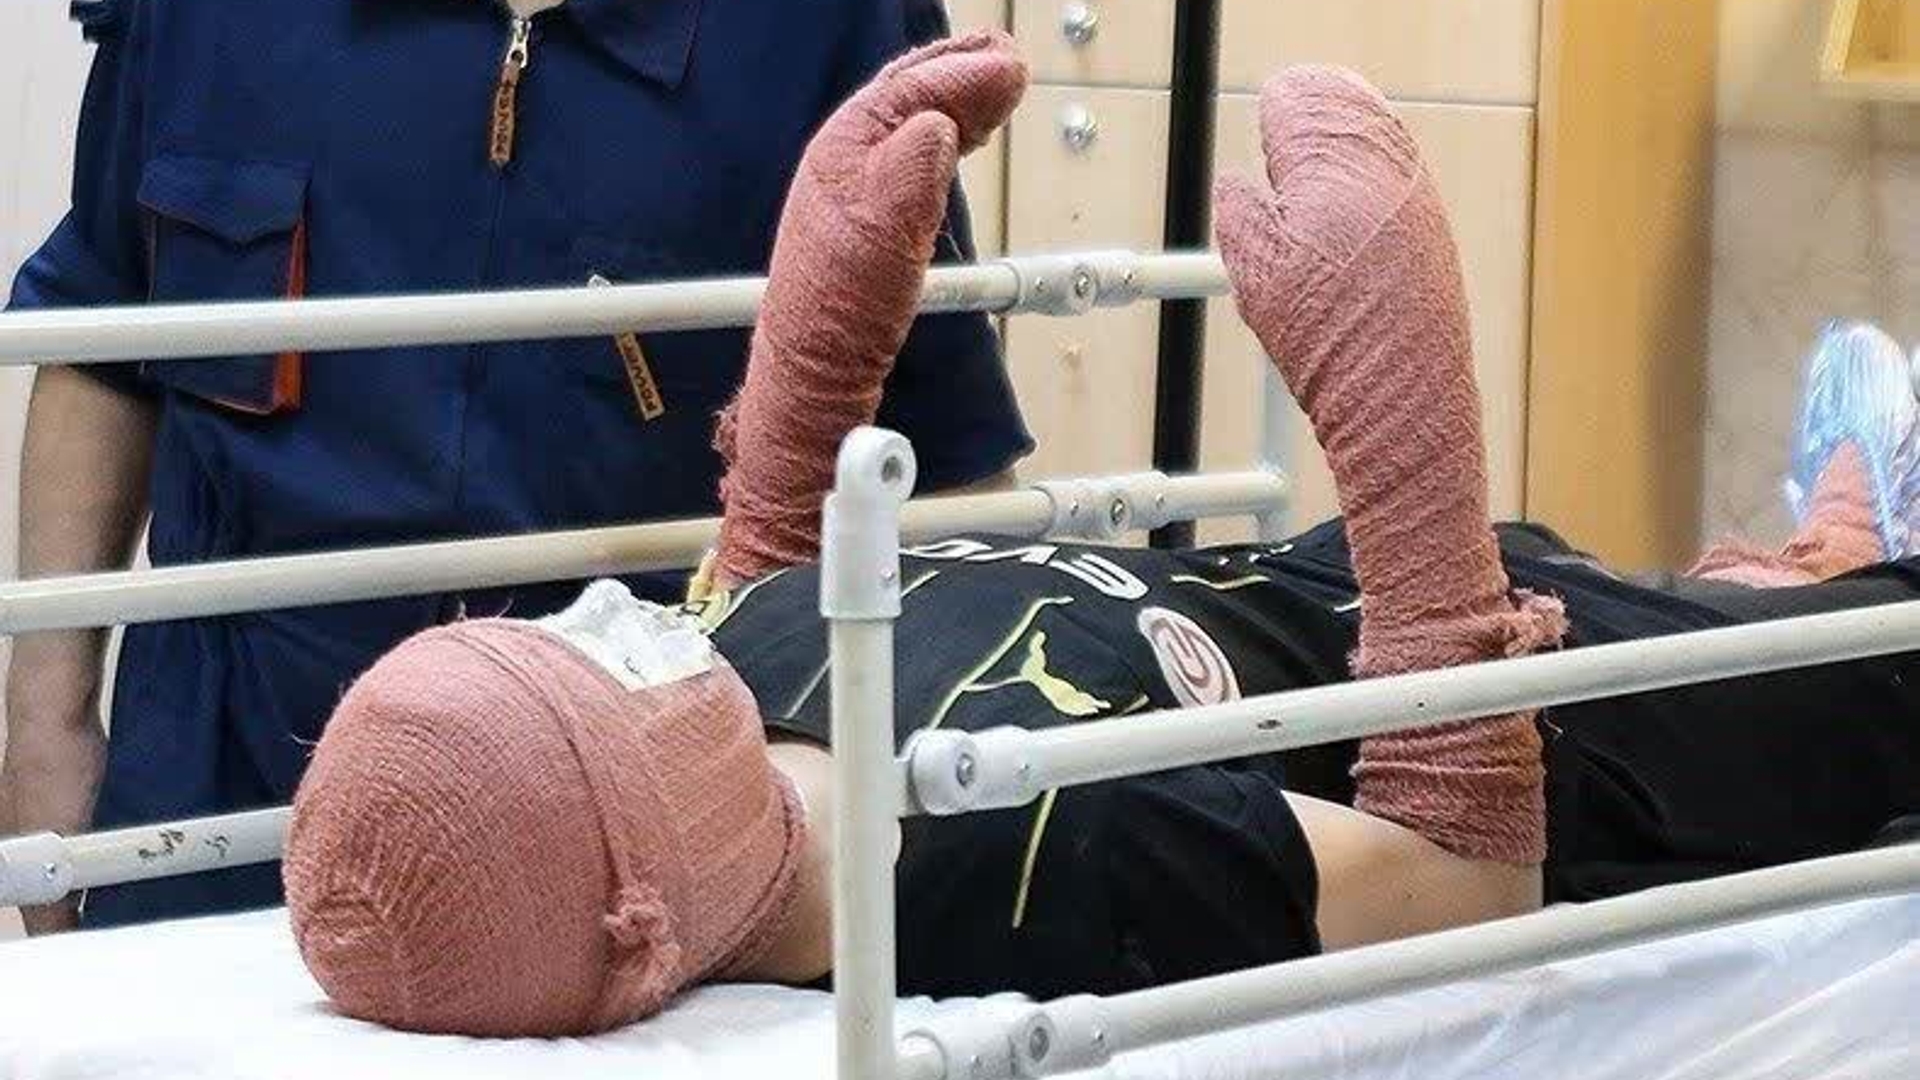 انفجار نارنجک چهارشنبه سوری در دستان نوجوان 13 ساله و قطعی سه انگشت وی